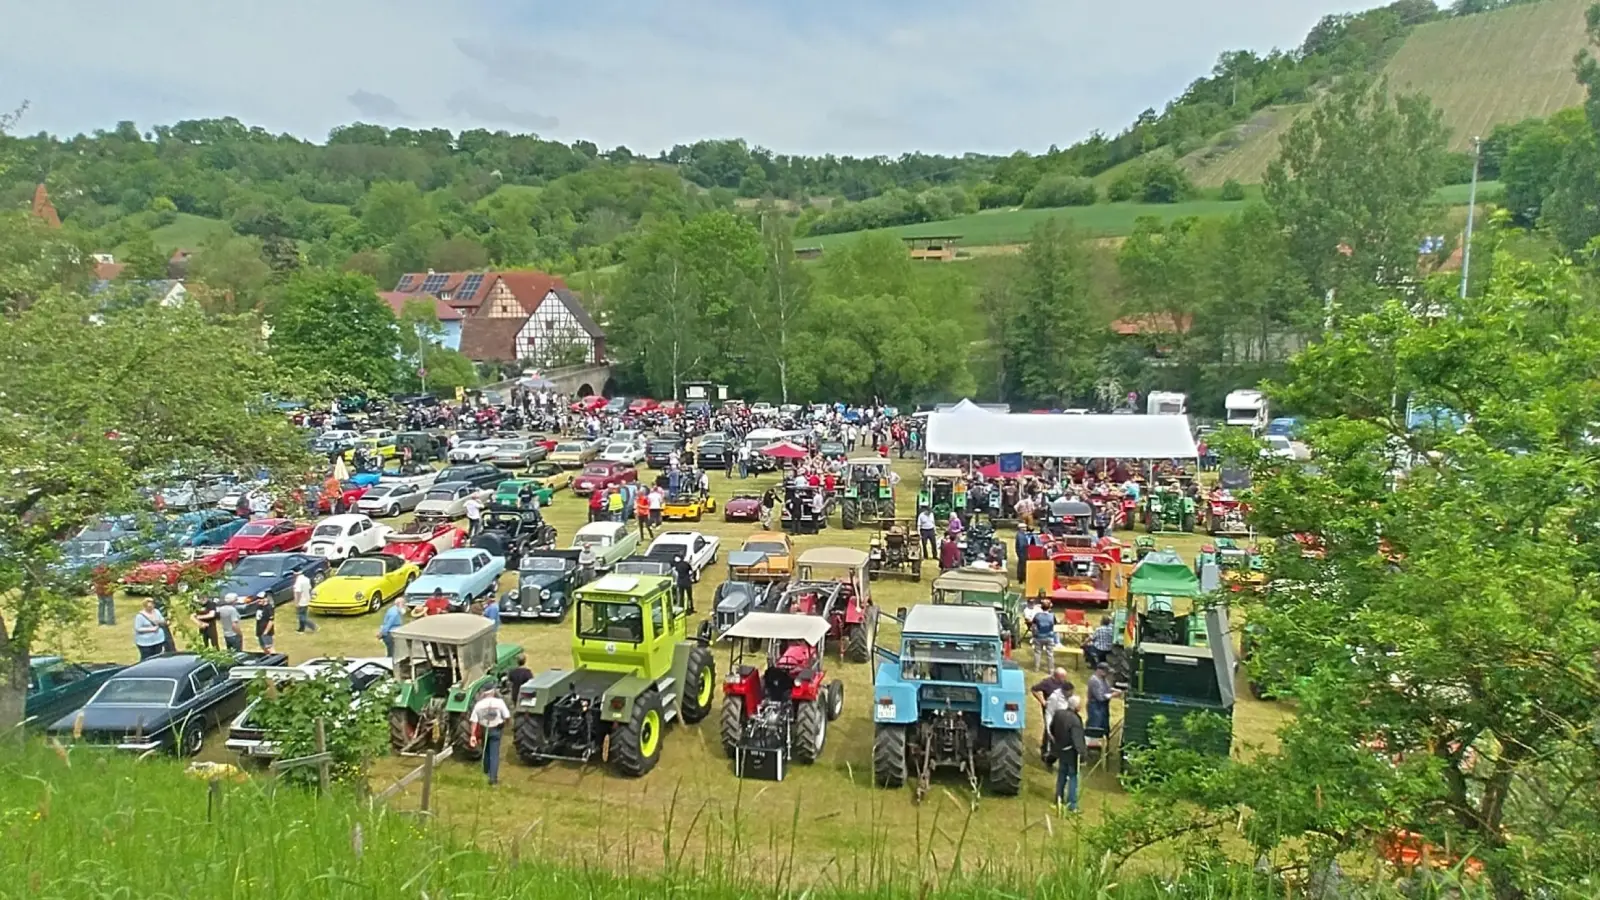 Rund 200 Fahrzeuge waren auf dem Gelände zu bestaunen. Die grünen Hänge bildeten einen reizvolle Kulisse. (Foto: Bernd Killinger)